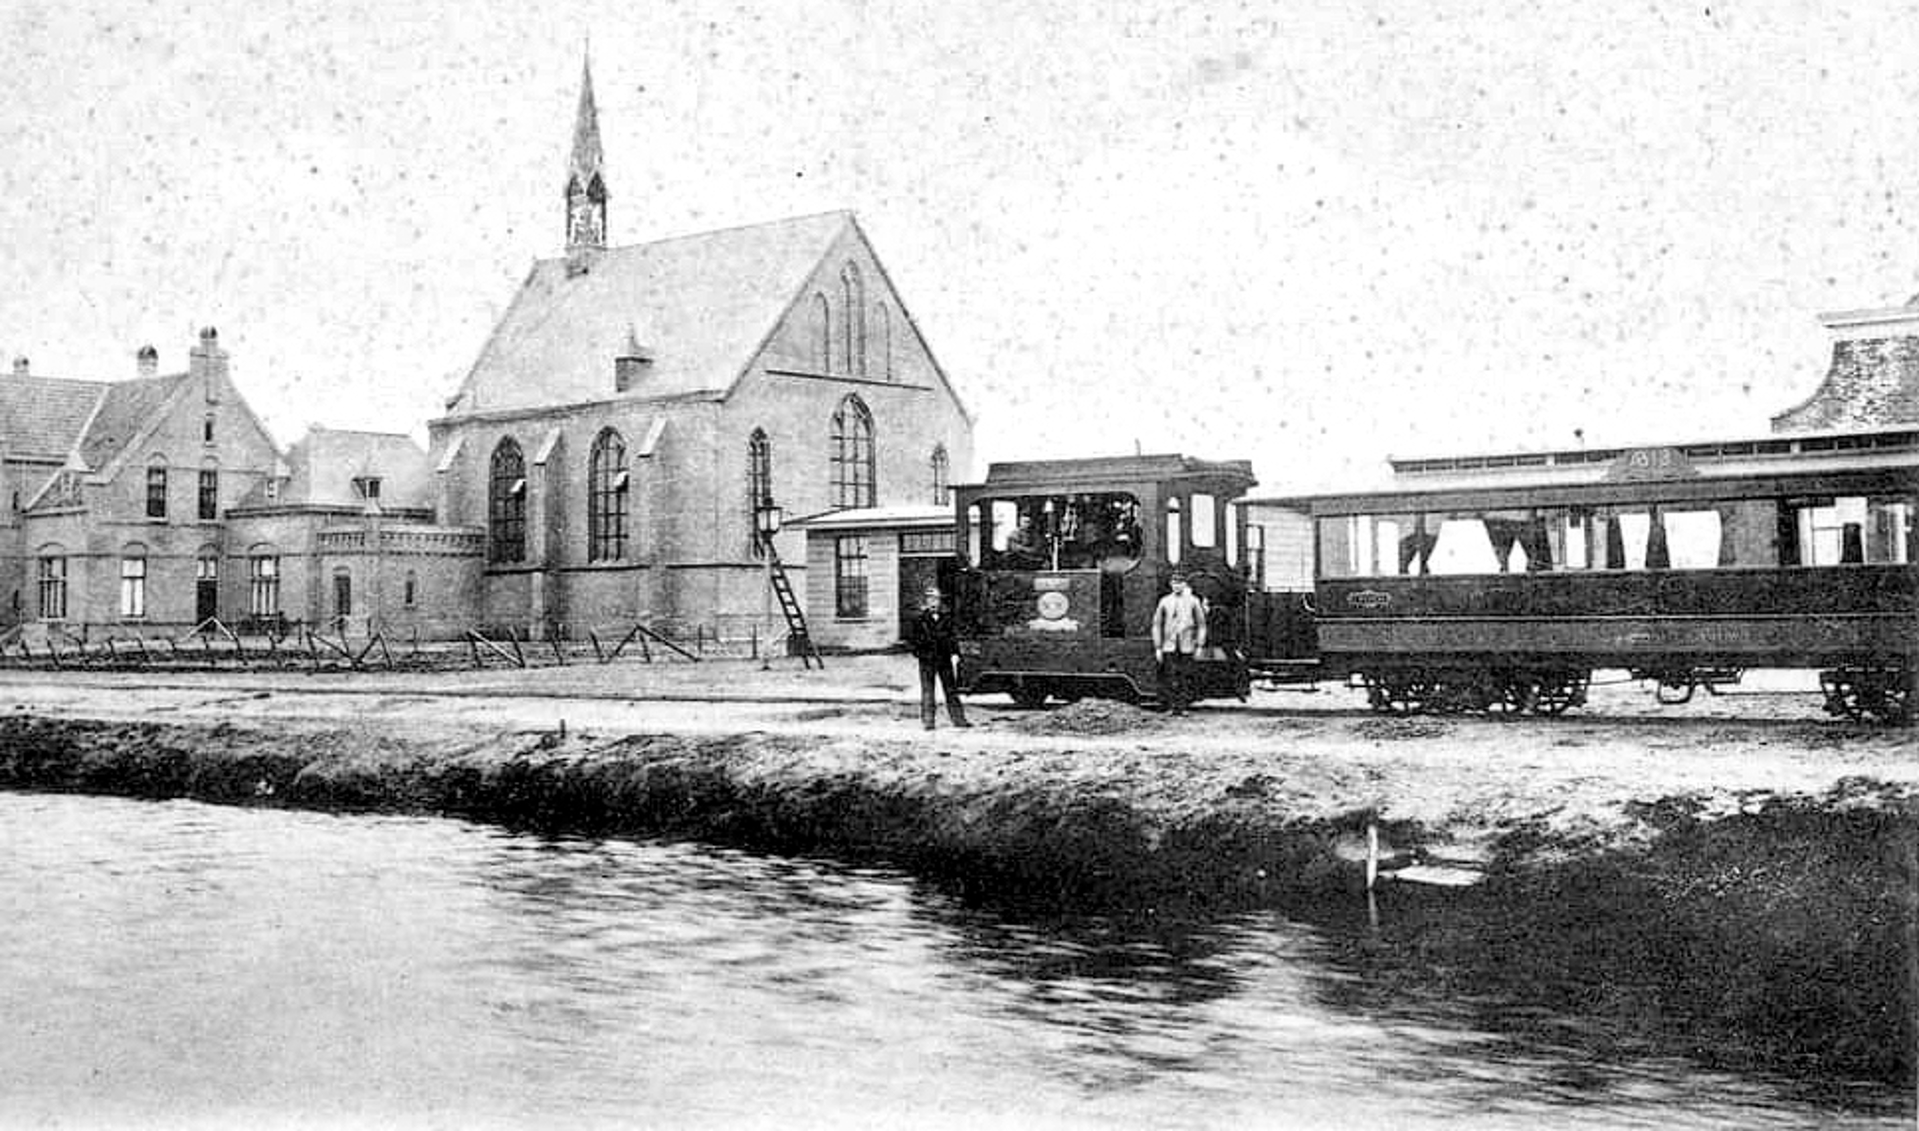 De tram die waarschijnlijk ook de Domeneer van Turfland heeft vervoerd, hier bij de rooms-katholieke kerk in Bargeroosterveen. 